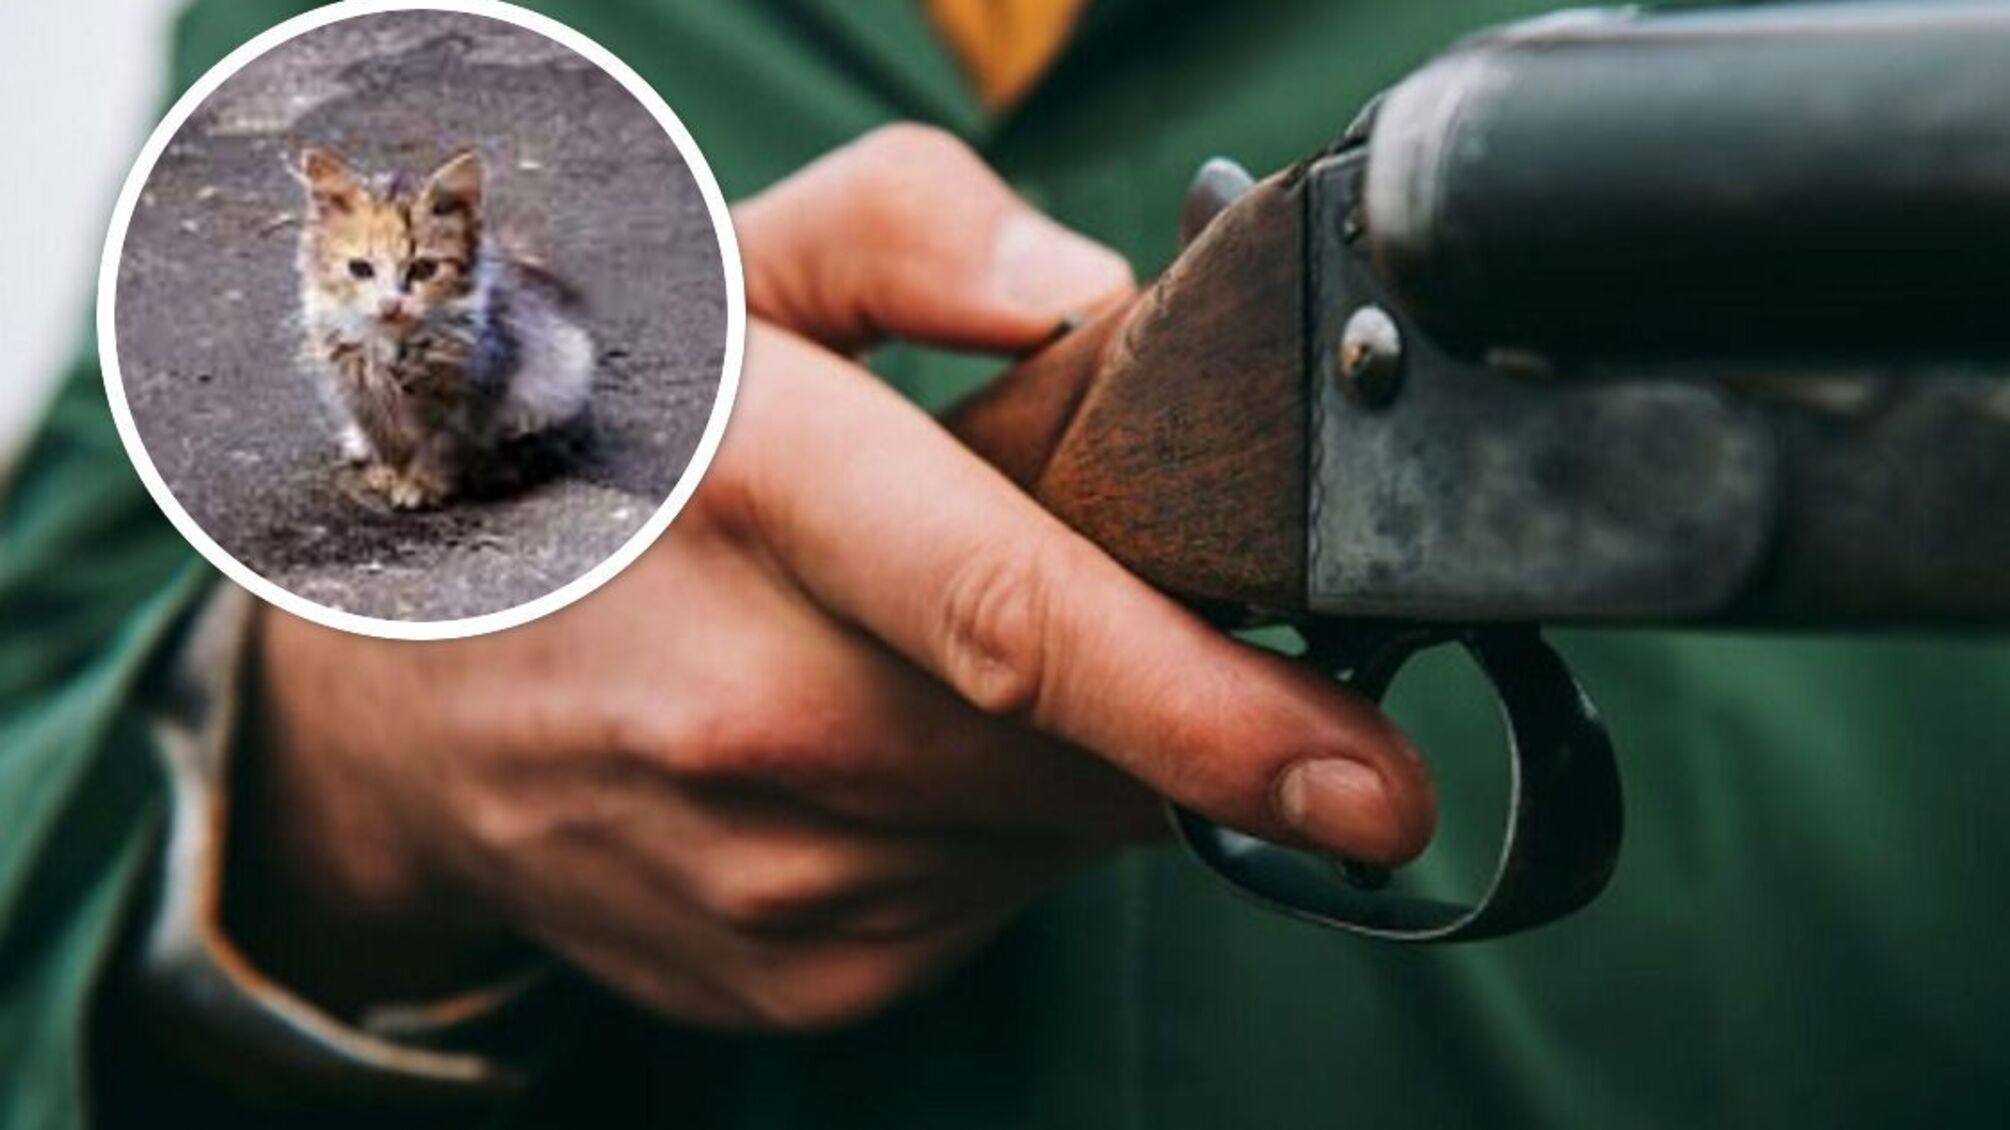 В Одессе живодер застрелил кошку: у него изъяли целый арсенал оружия